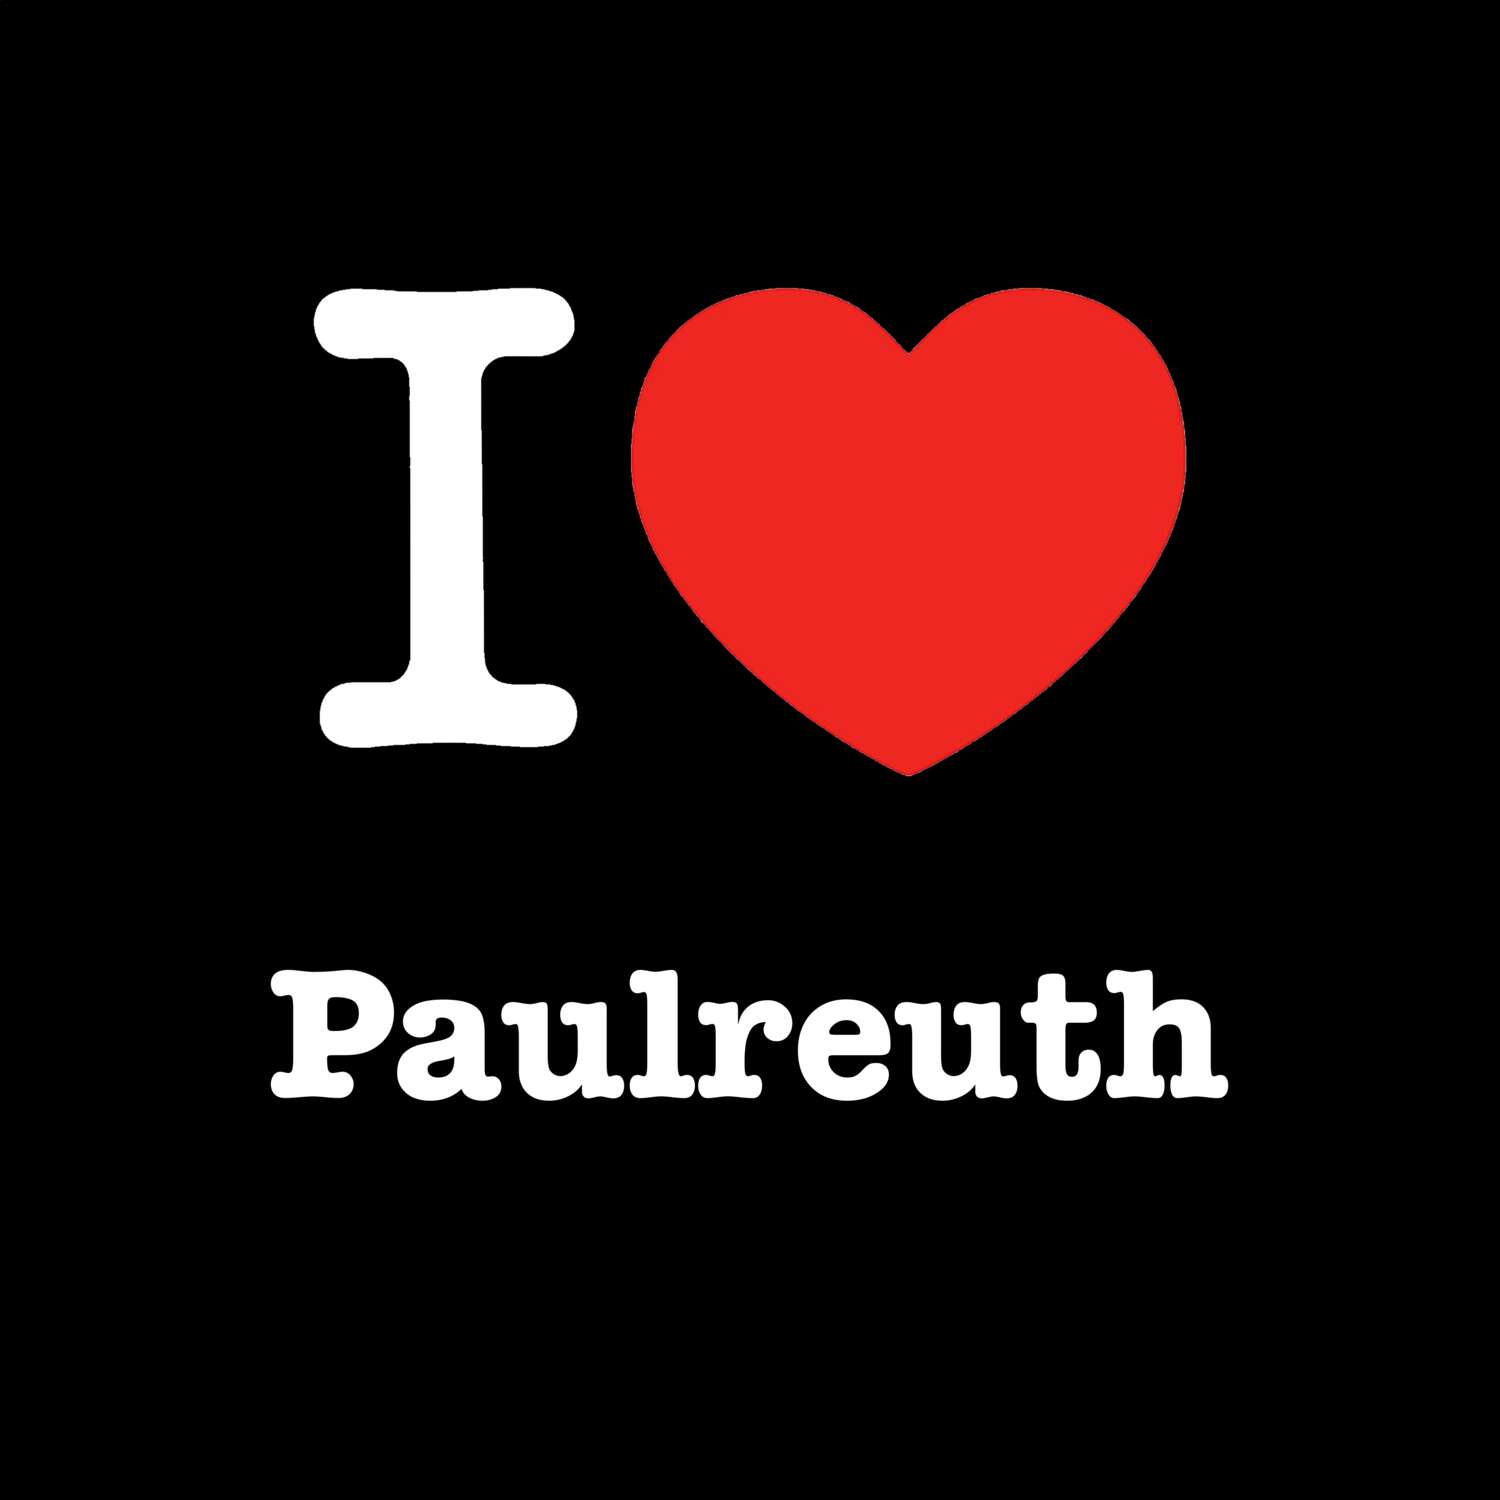 Paulreuth T-Shirt »I love«